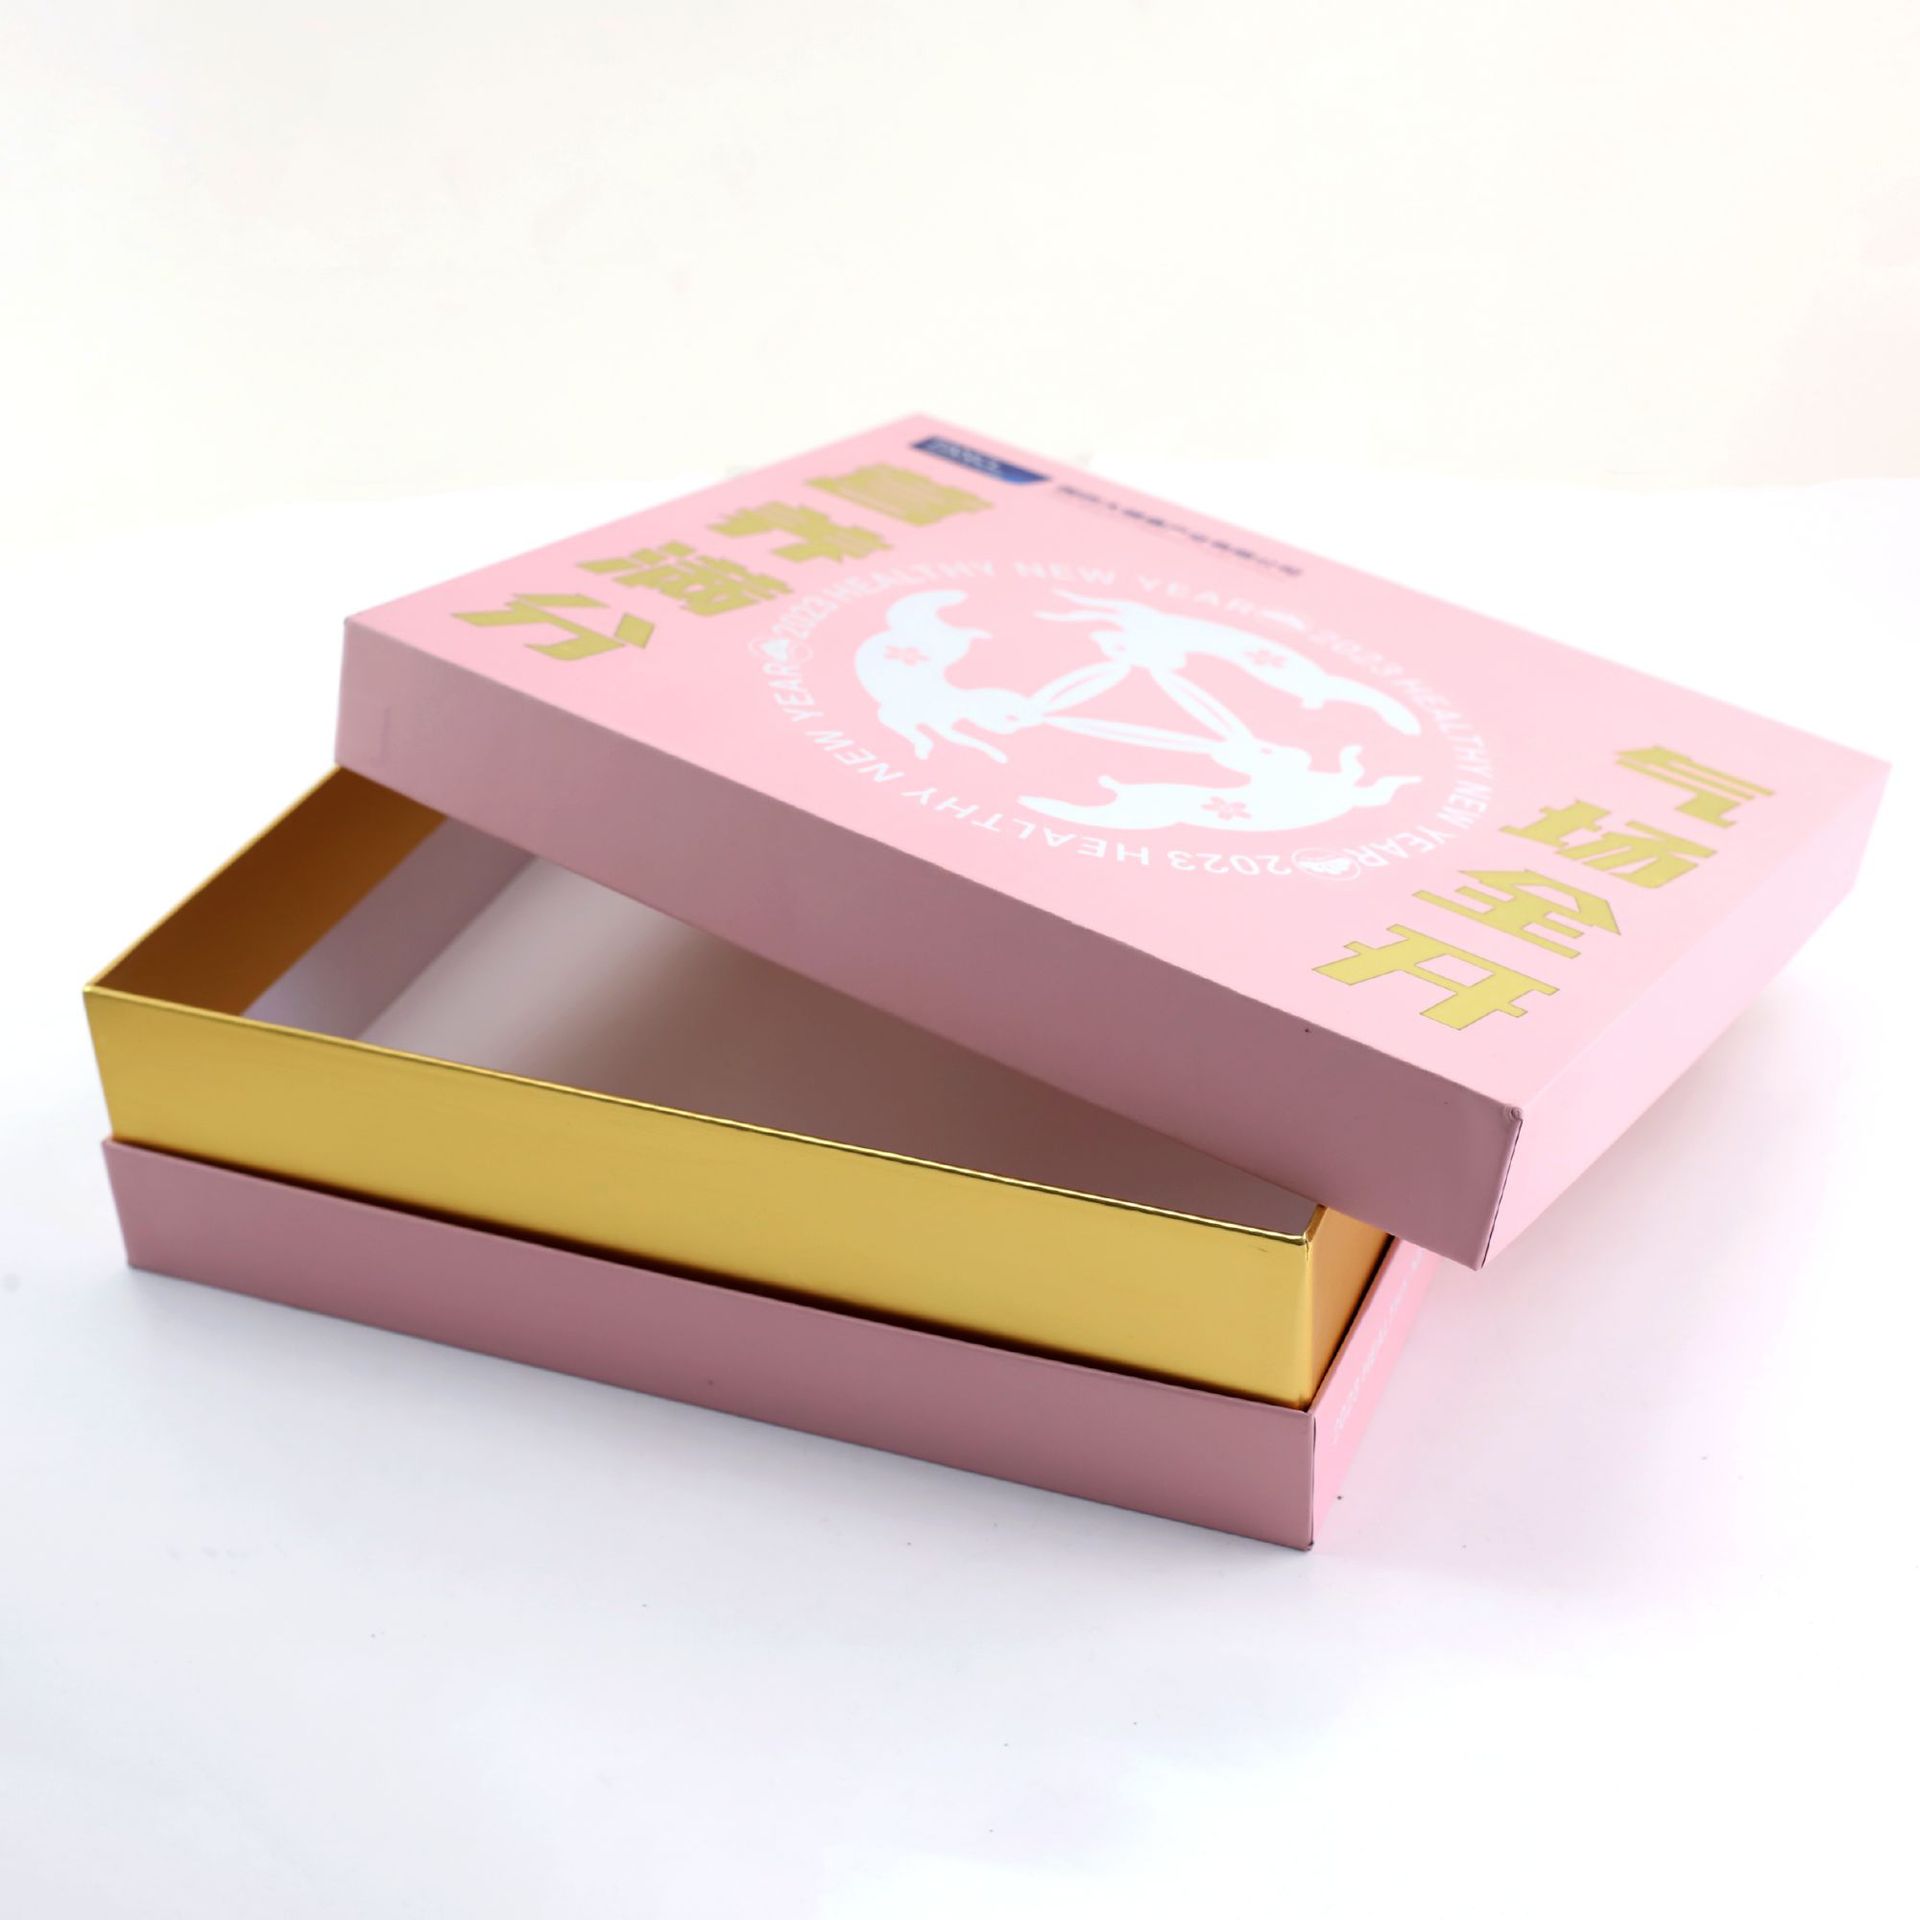 天地盖礼盒白卡纸盒书本盒礼品包装盒彩盒印刷纳米UV飞机盒扣底盒详情图3